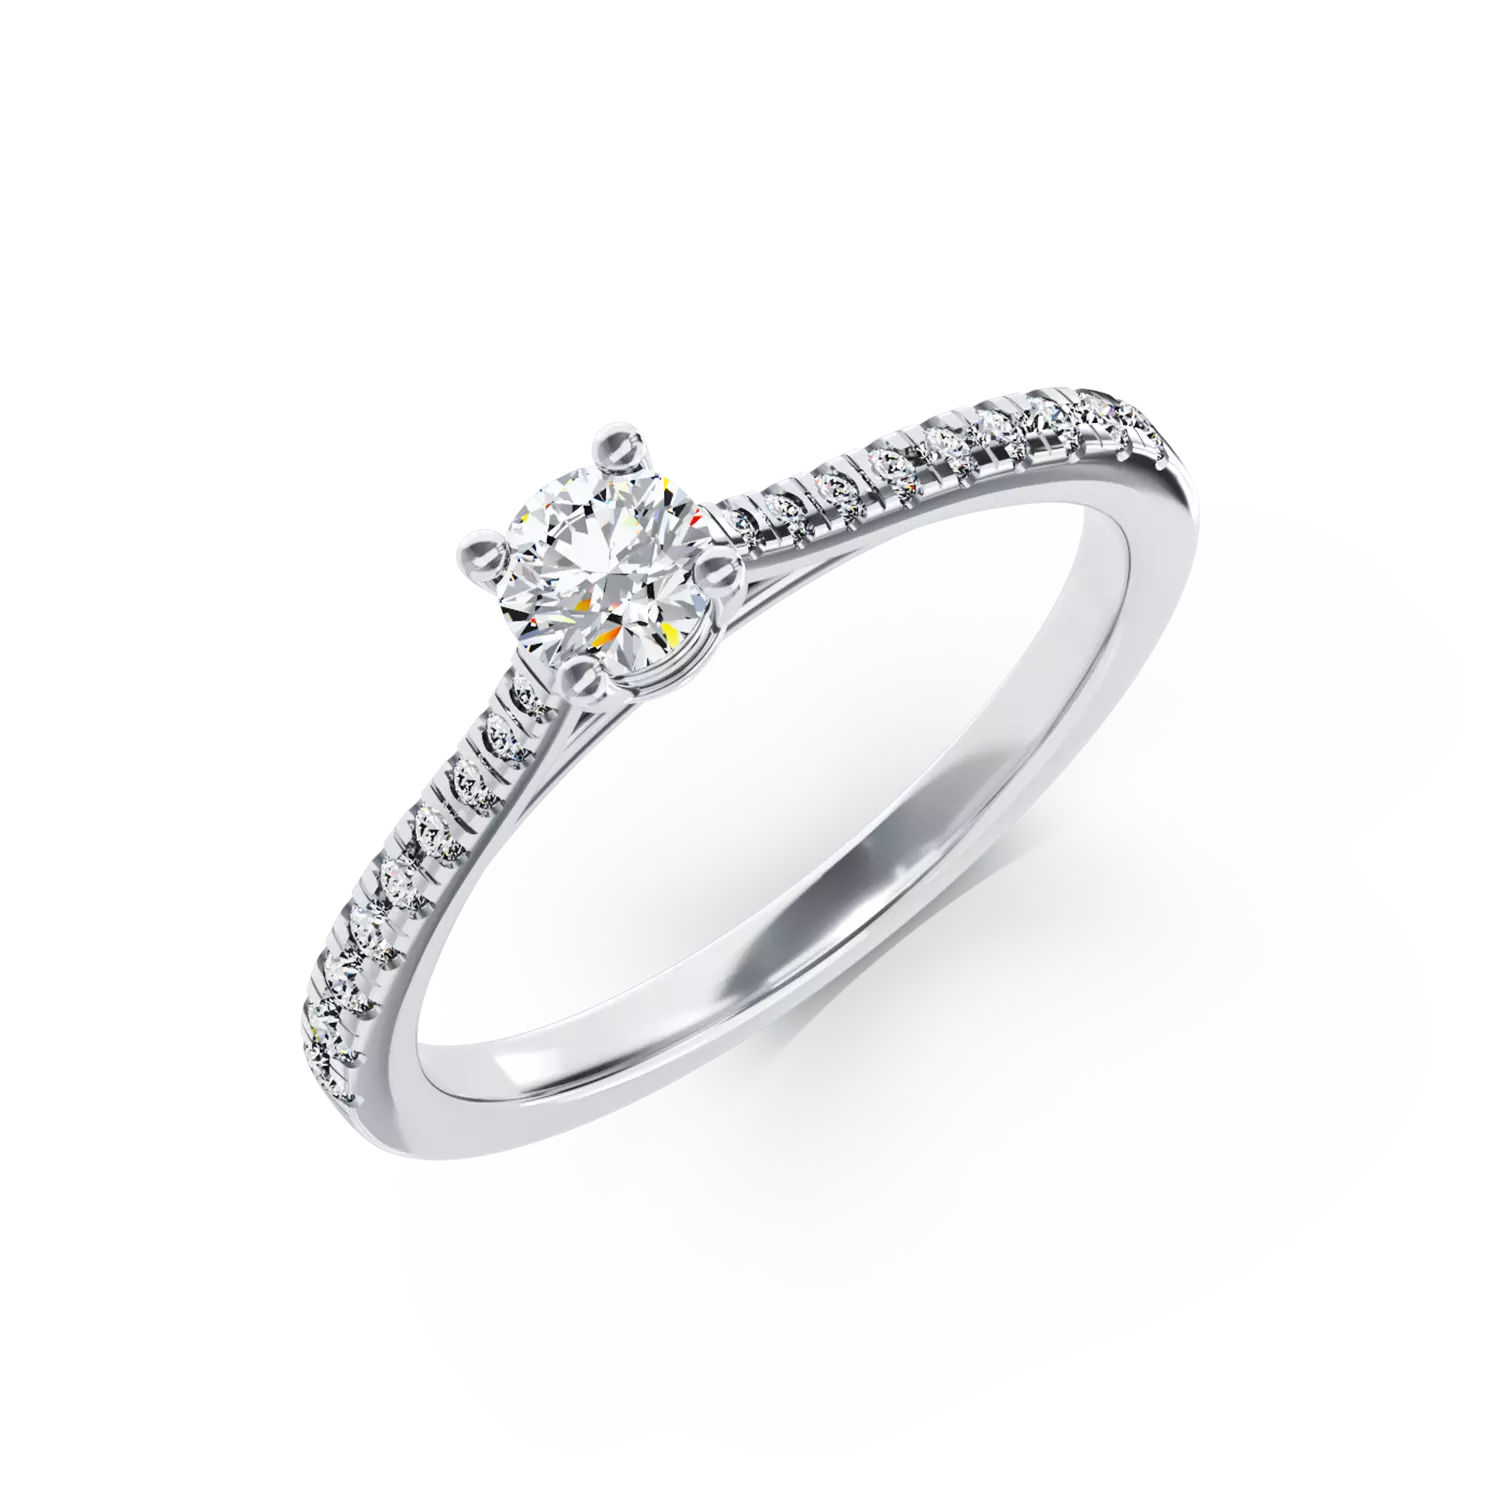 Eljegyzési gyűrű 18K-os fehér aranyból 0,24ct gyémánttal és 0,19ct gyémánttal. Gramm: 2,77